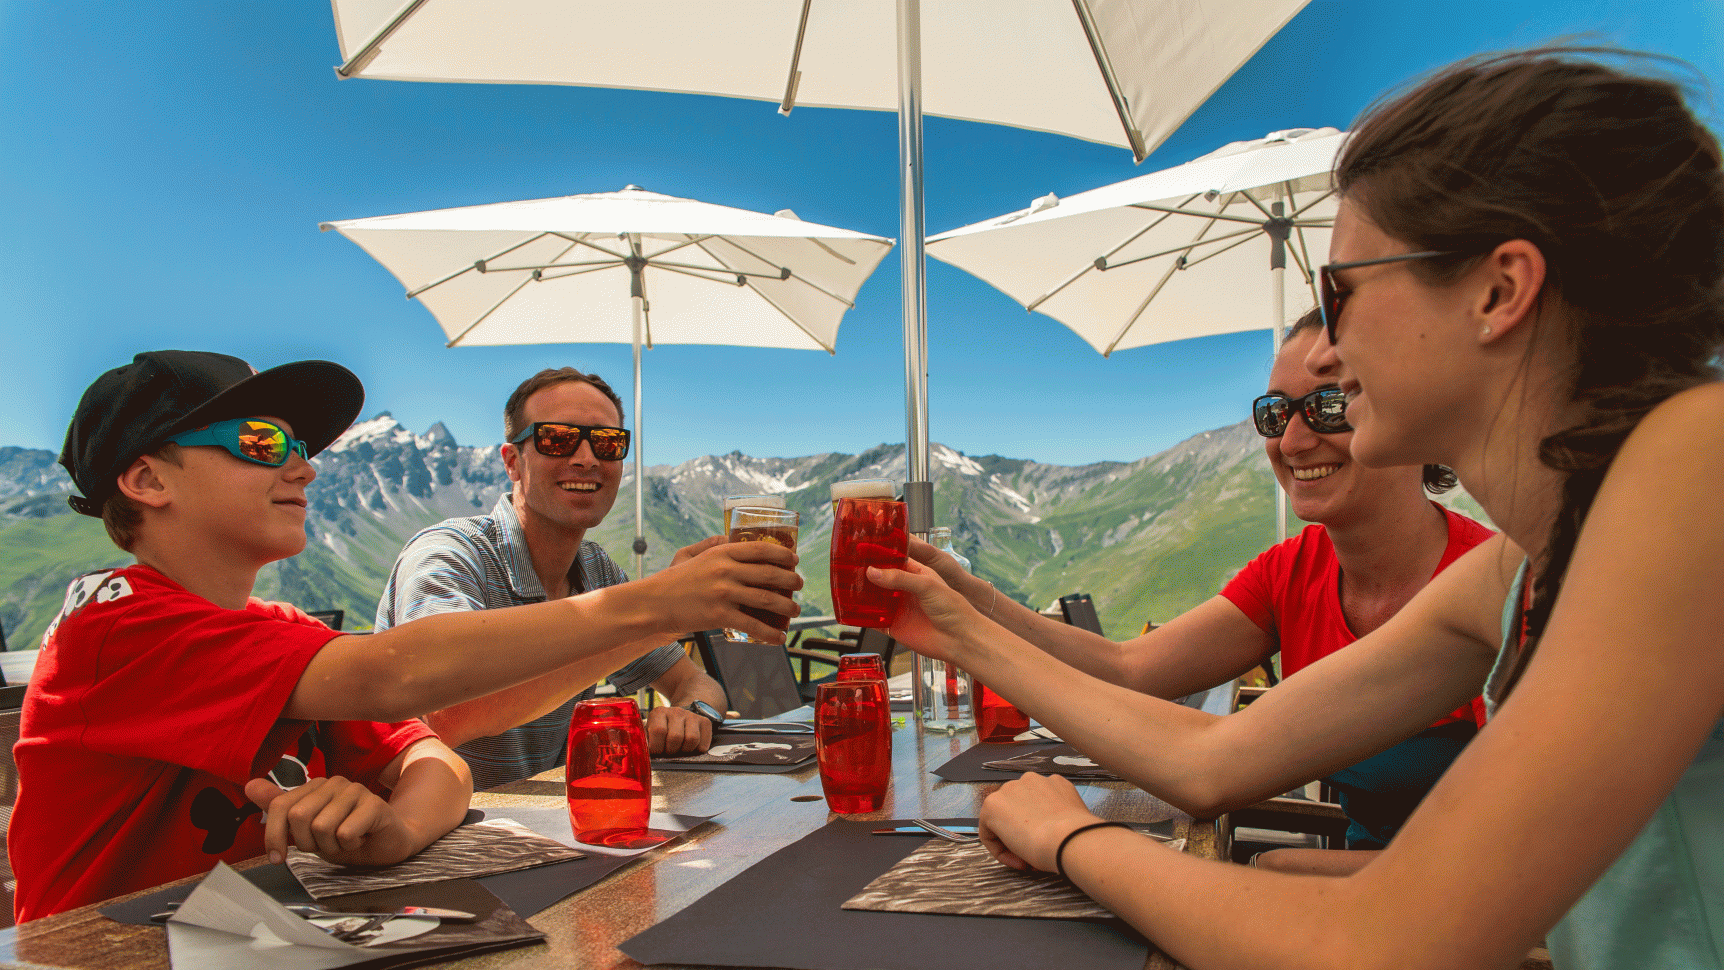 Boire un coup en famille avec vue sur les montagnes